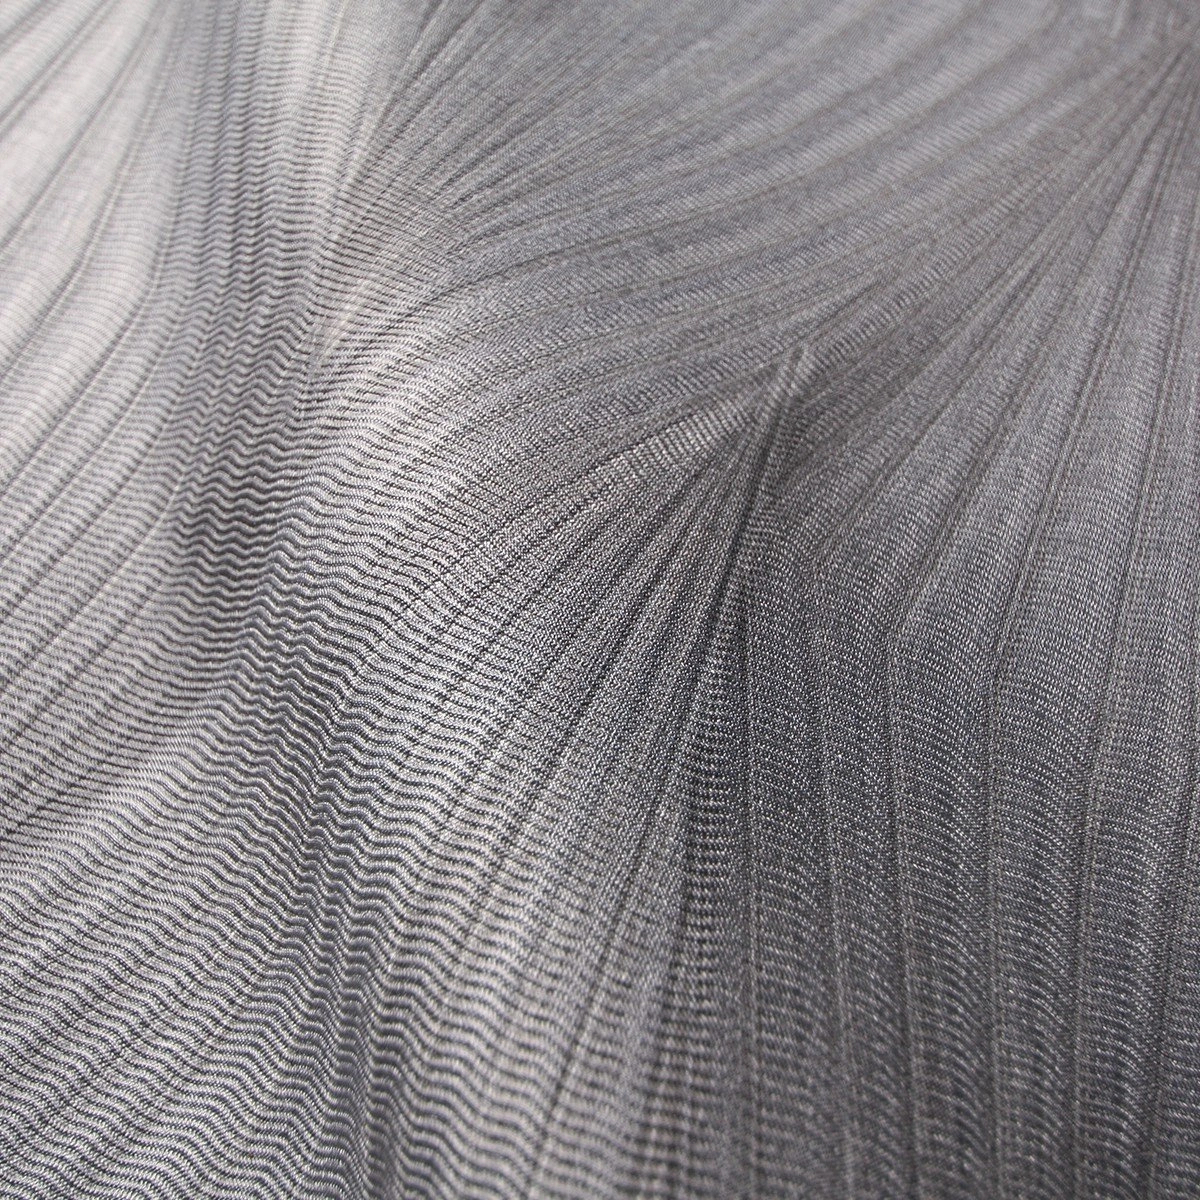 Ezüst szürke modern lamborghini olasz design tapéta 70cm széles